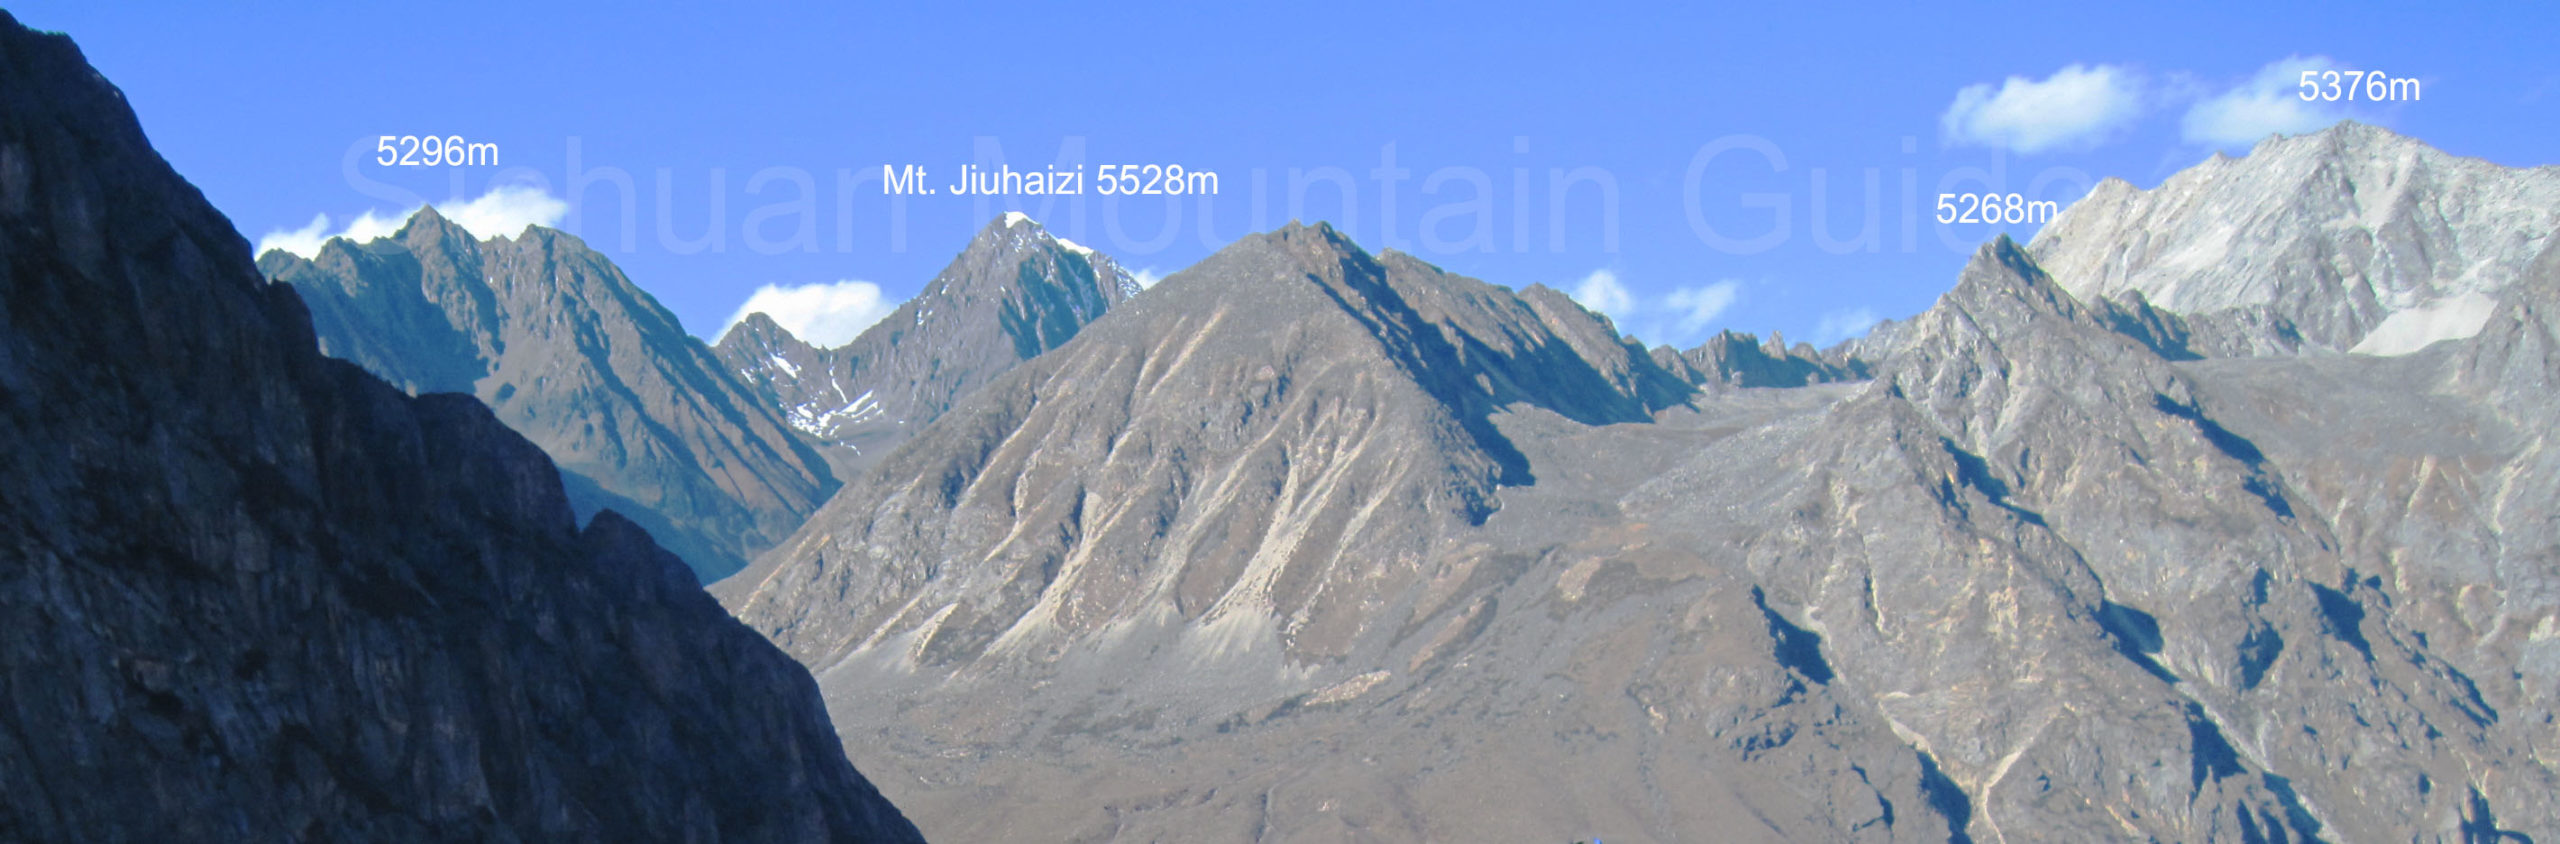 Jiuhaizi Mountains from SE